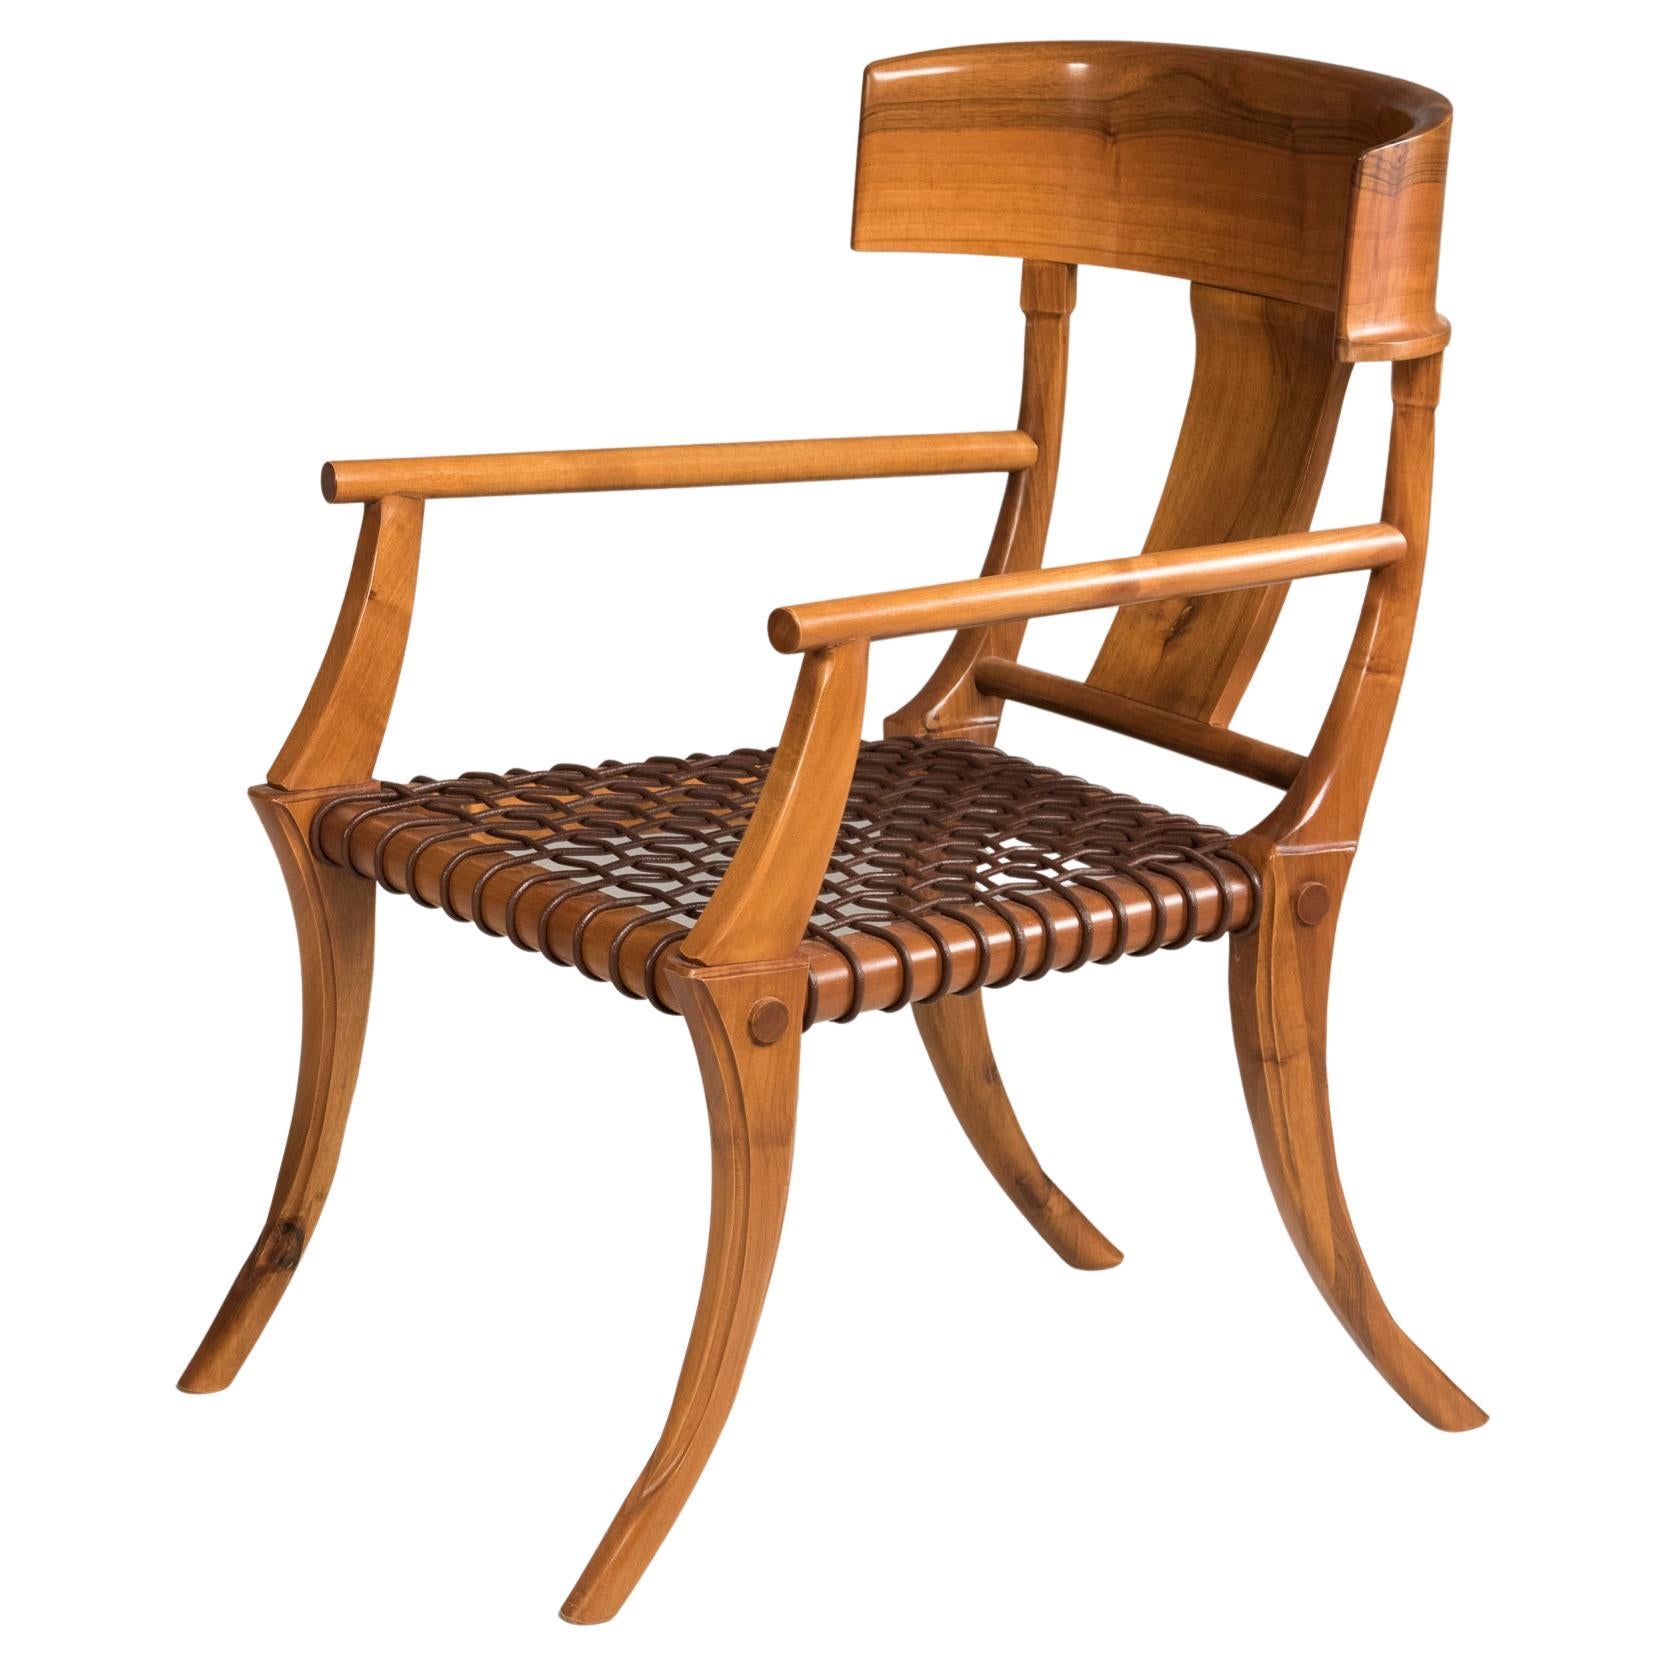 Sessel mit Säbelbeinen aus gewebtem Leder und Holz in anpassbaren Farben und Polsterung